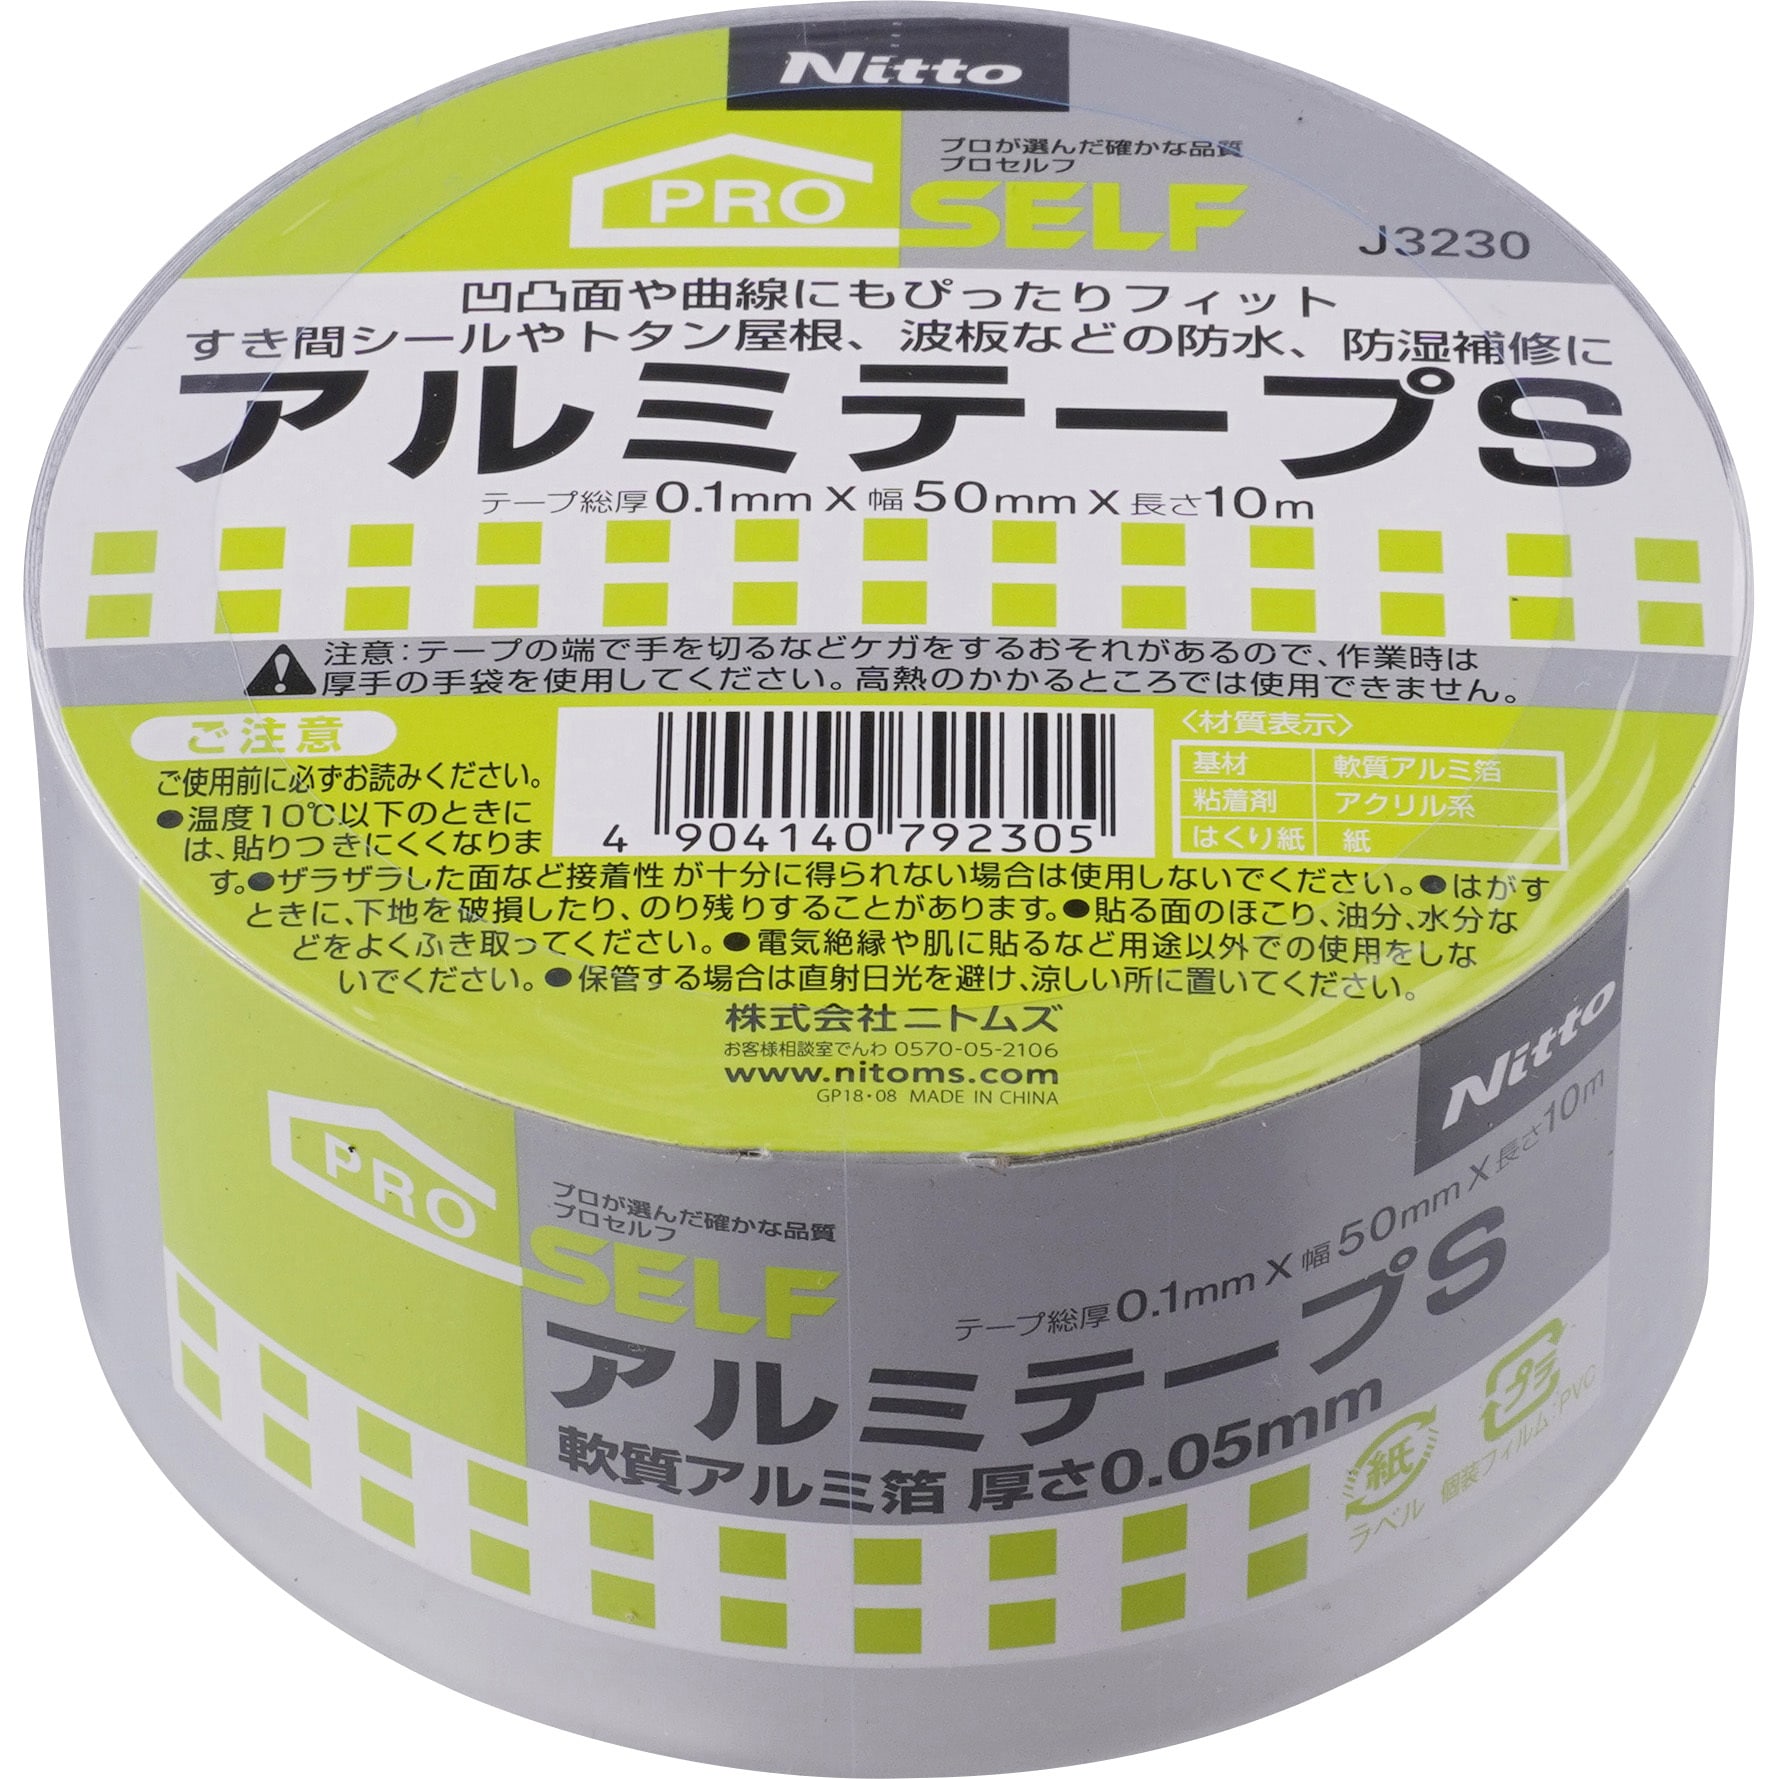 ニトムズ アルミテープS 75mm×10m J3240 30巻入り 【高知インター店